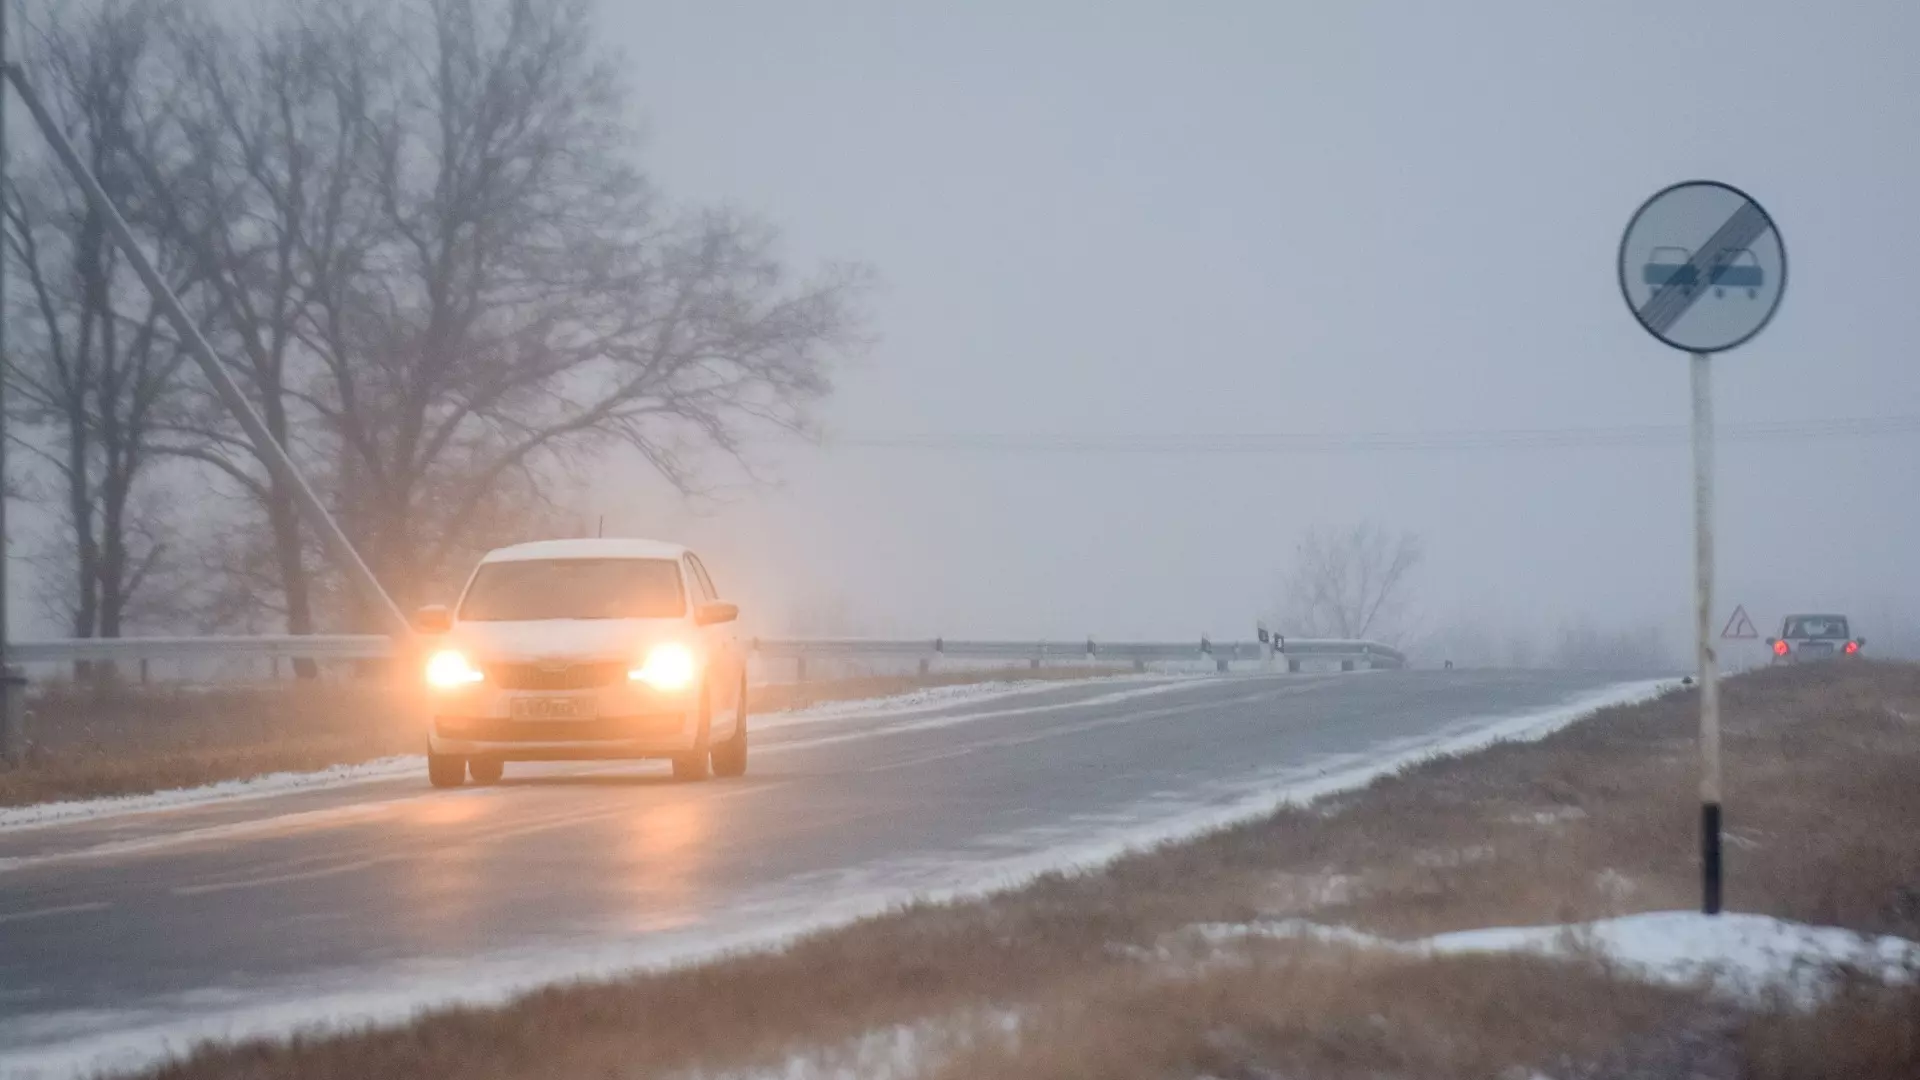 Глава Удмуртии оценил очистку дорог в прошедшие снегопады